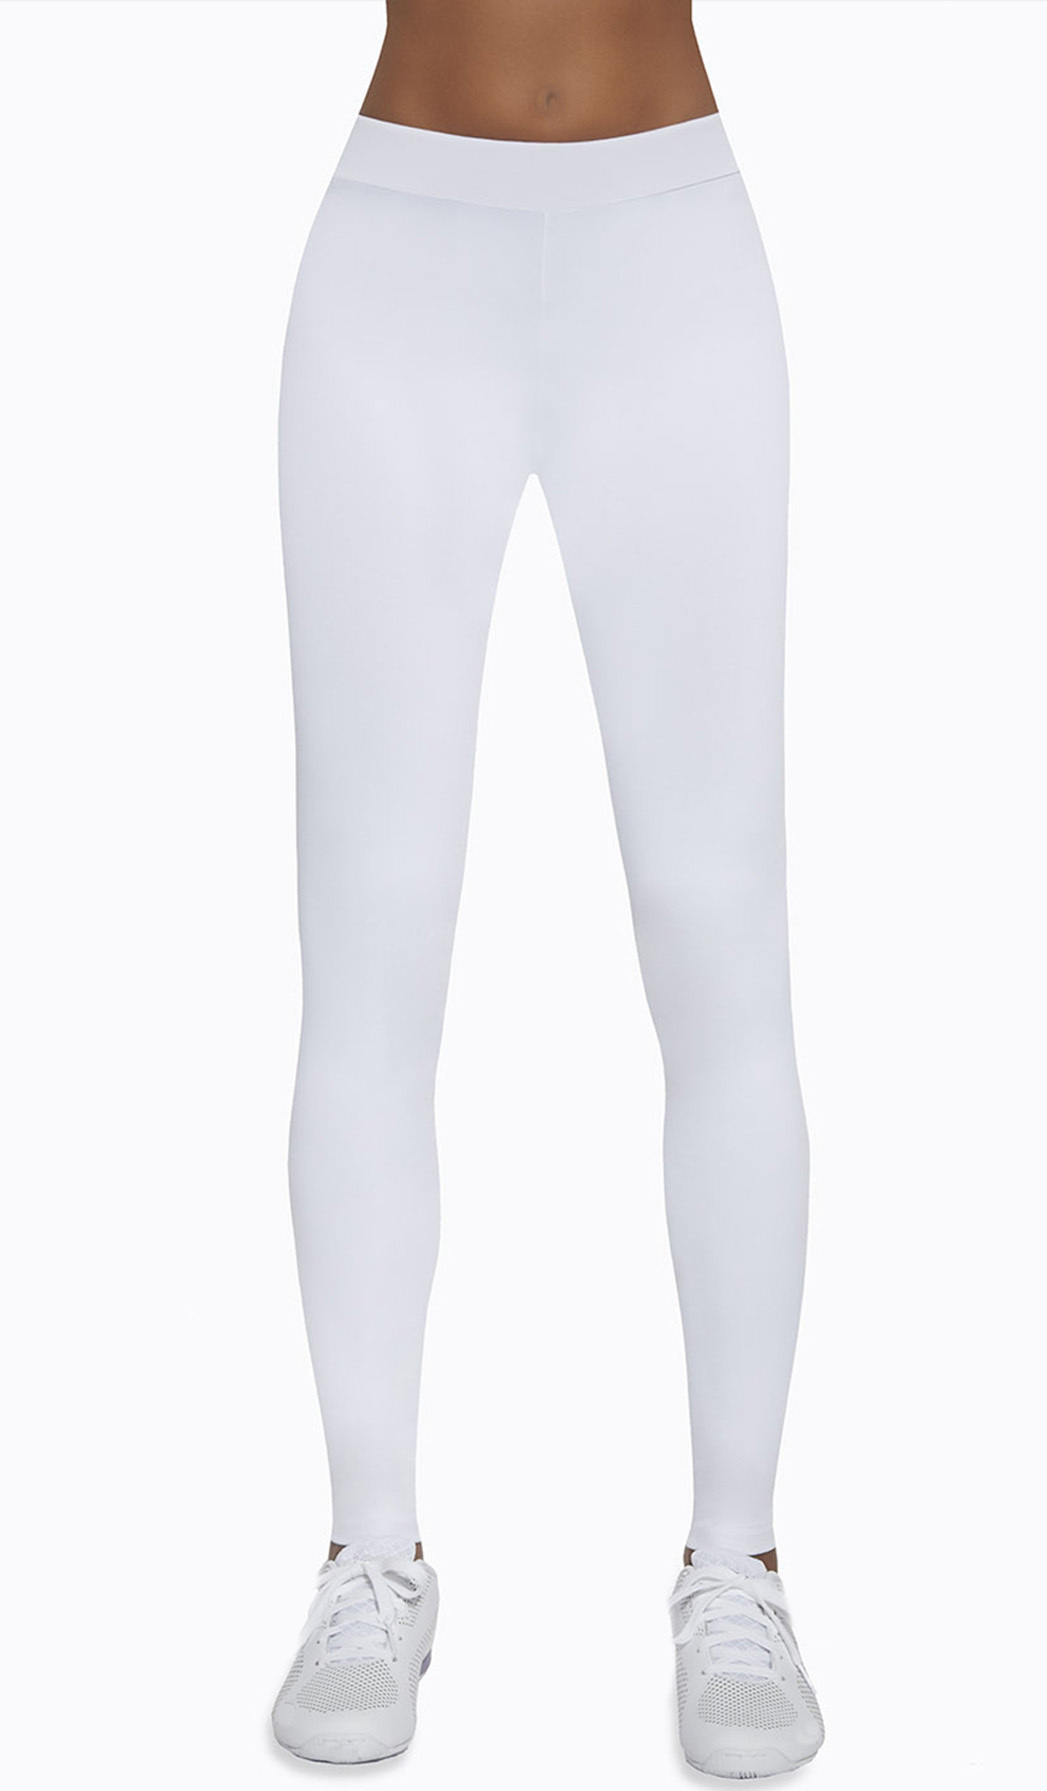 Лосины стоимость. Bas bleu лосины белые. Bas bleu спортивная одежда. Спортивные легинсы женские. Легинсы спортивные белые.